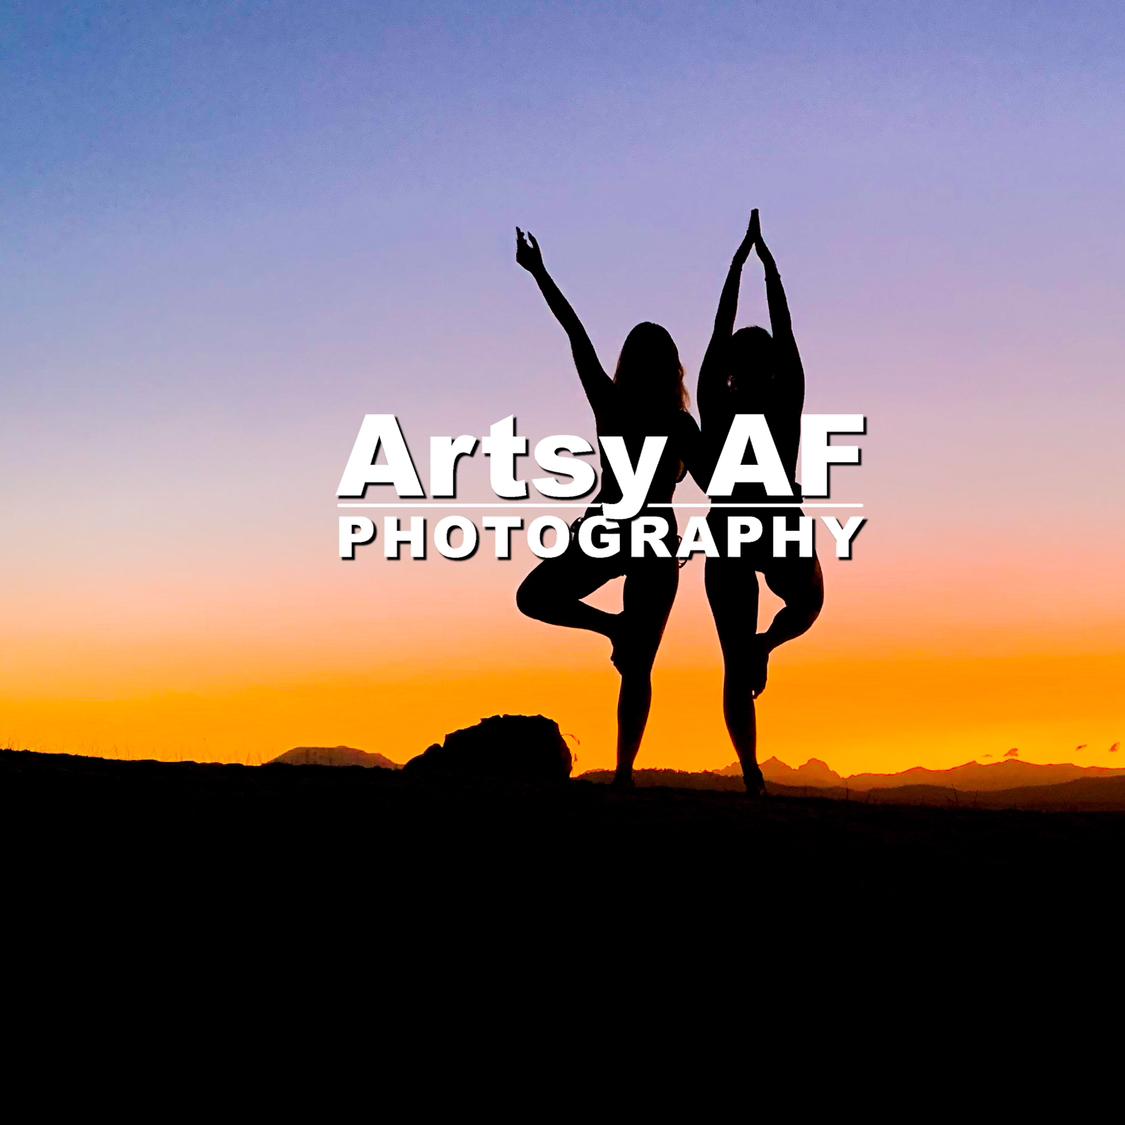 Artsy_AF_photo's images